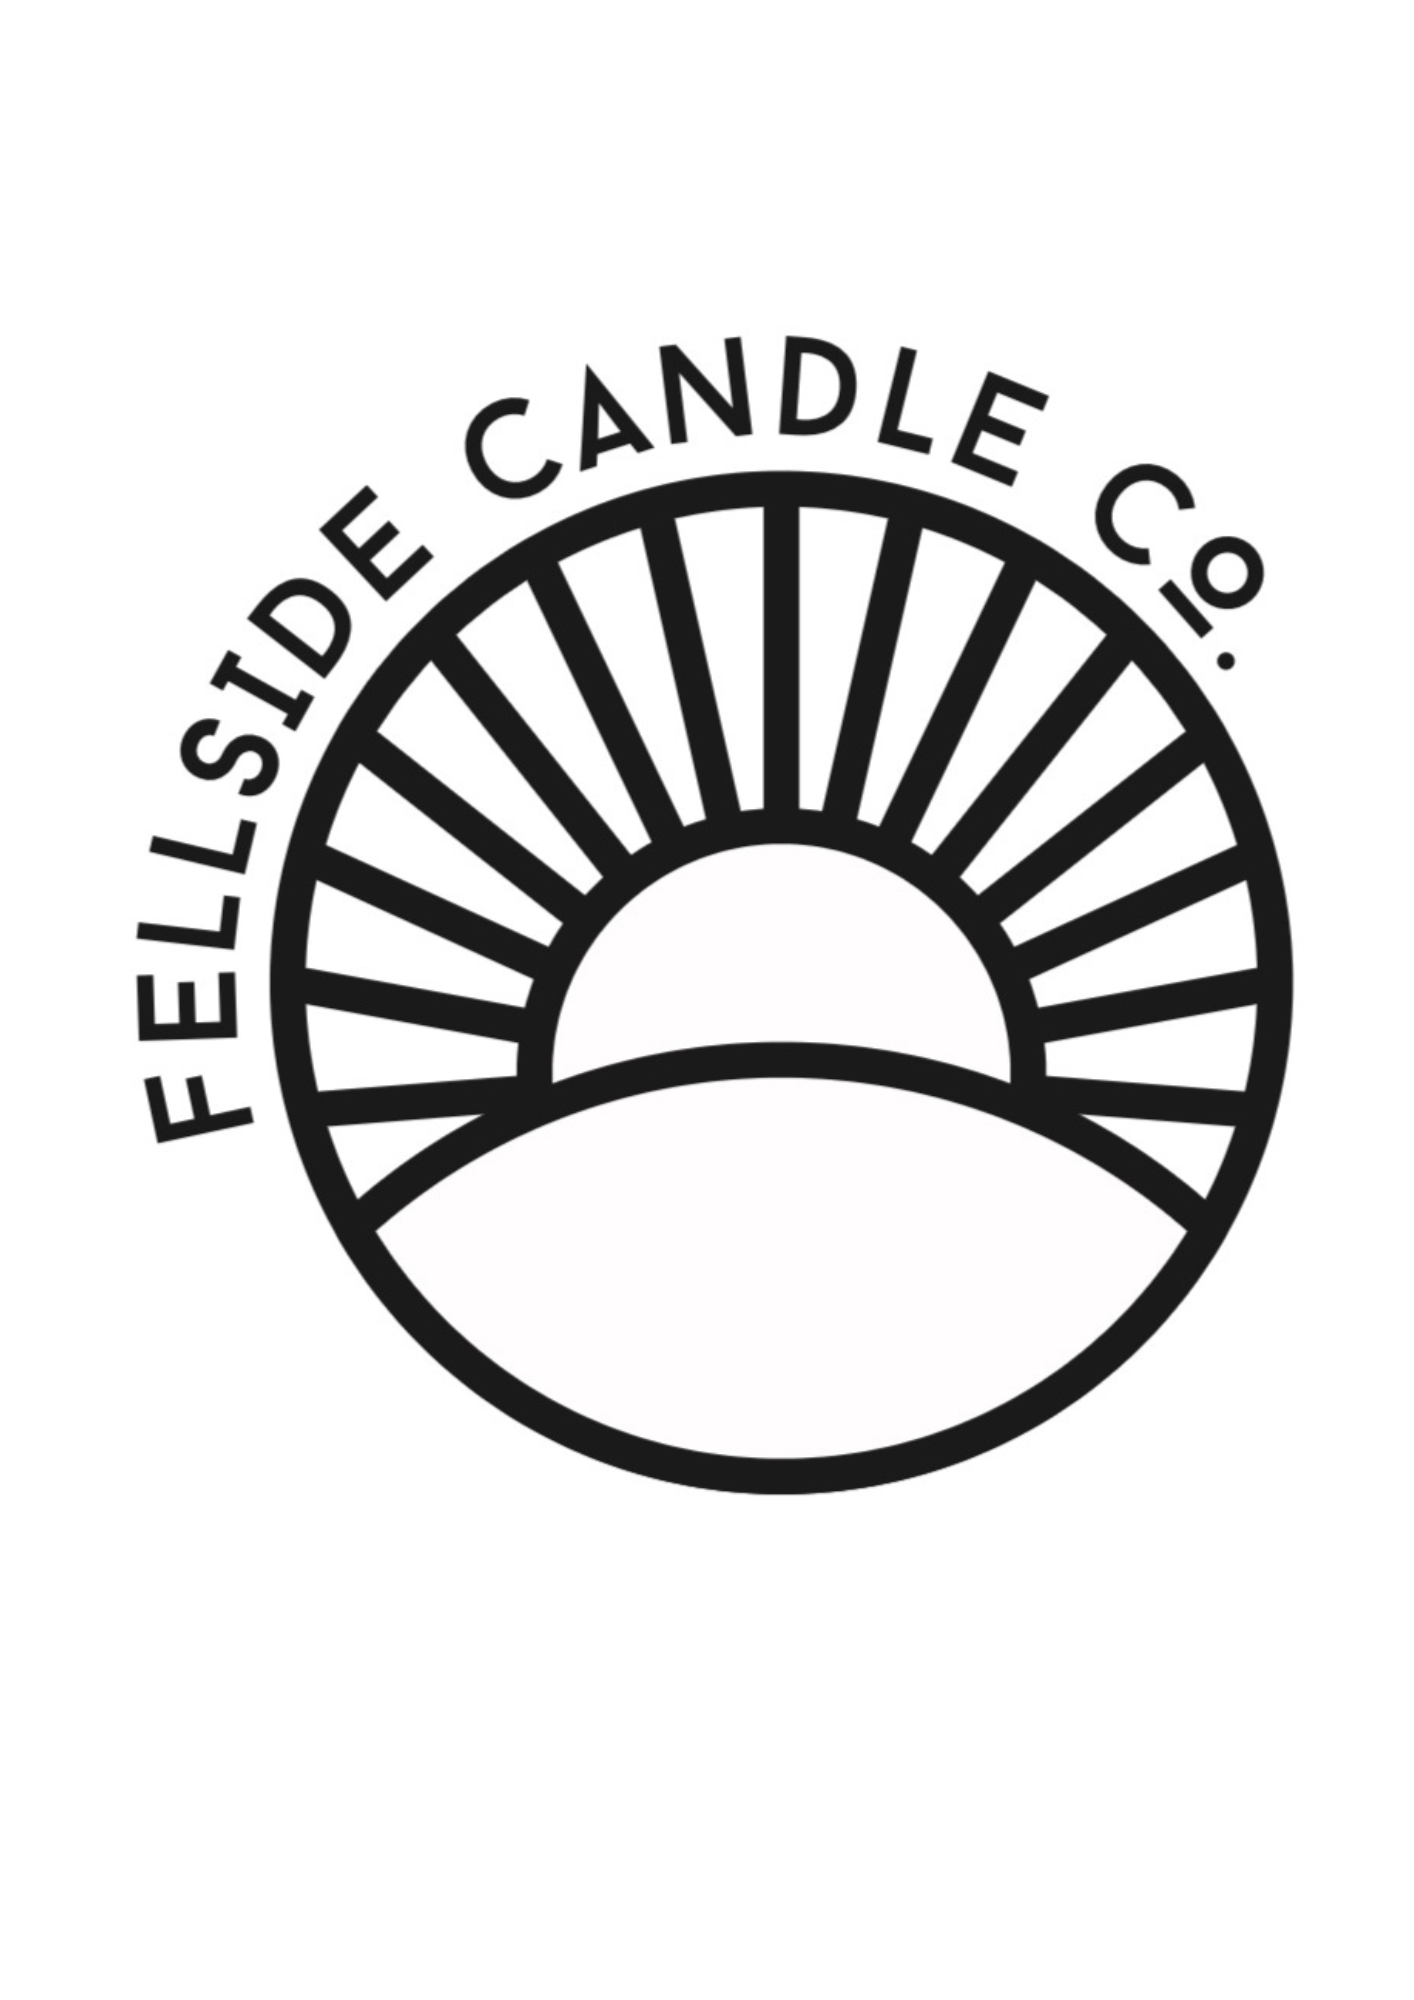 Fellside Candle Co.